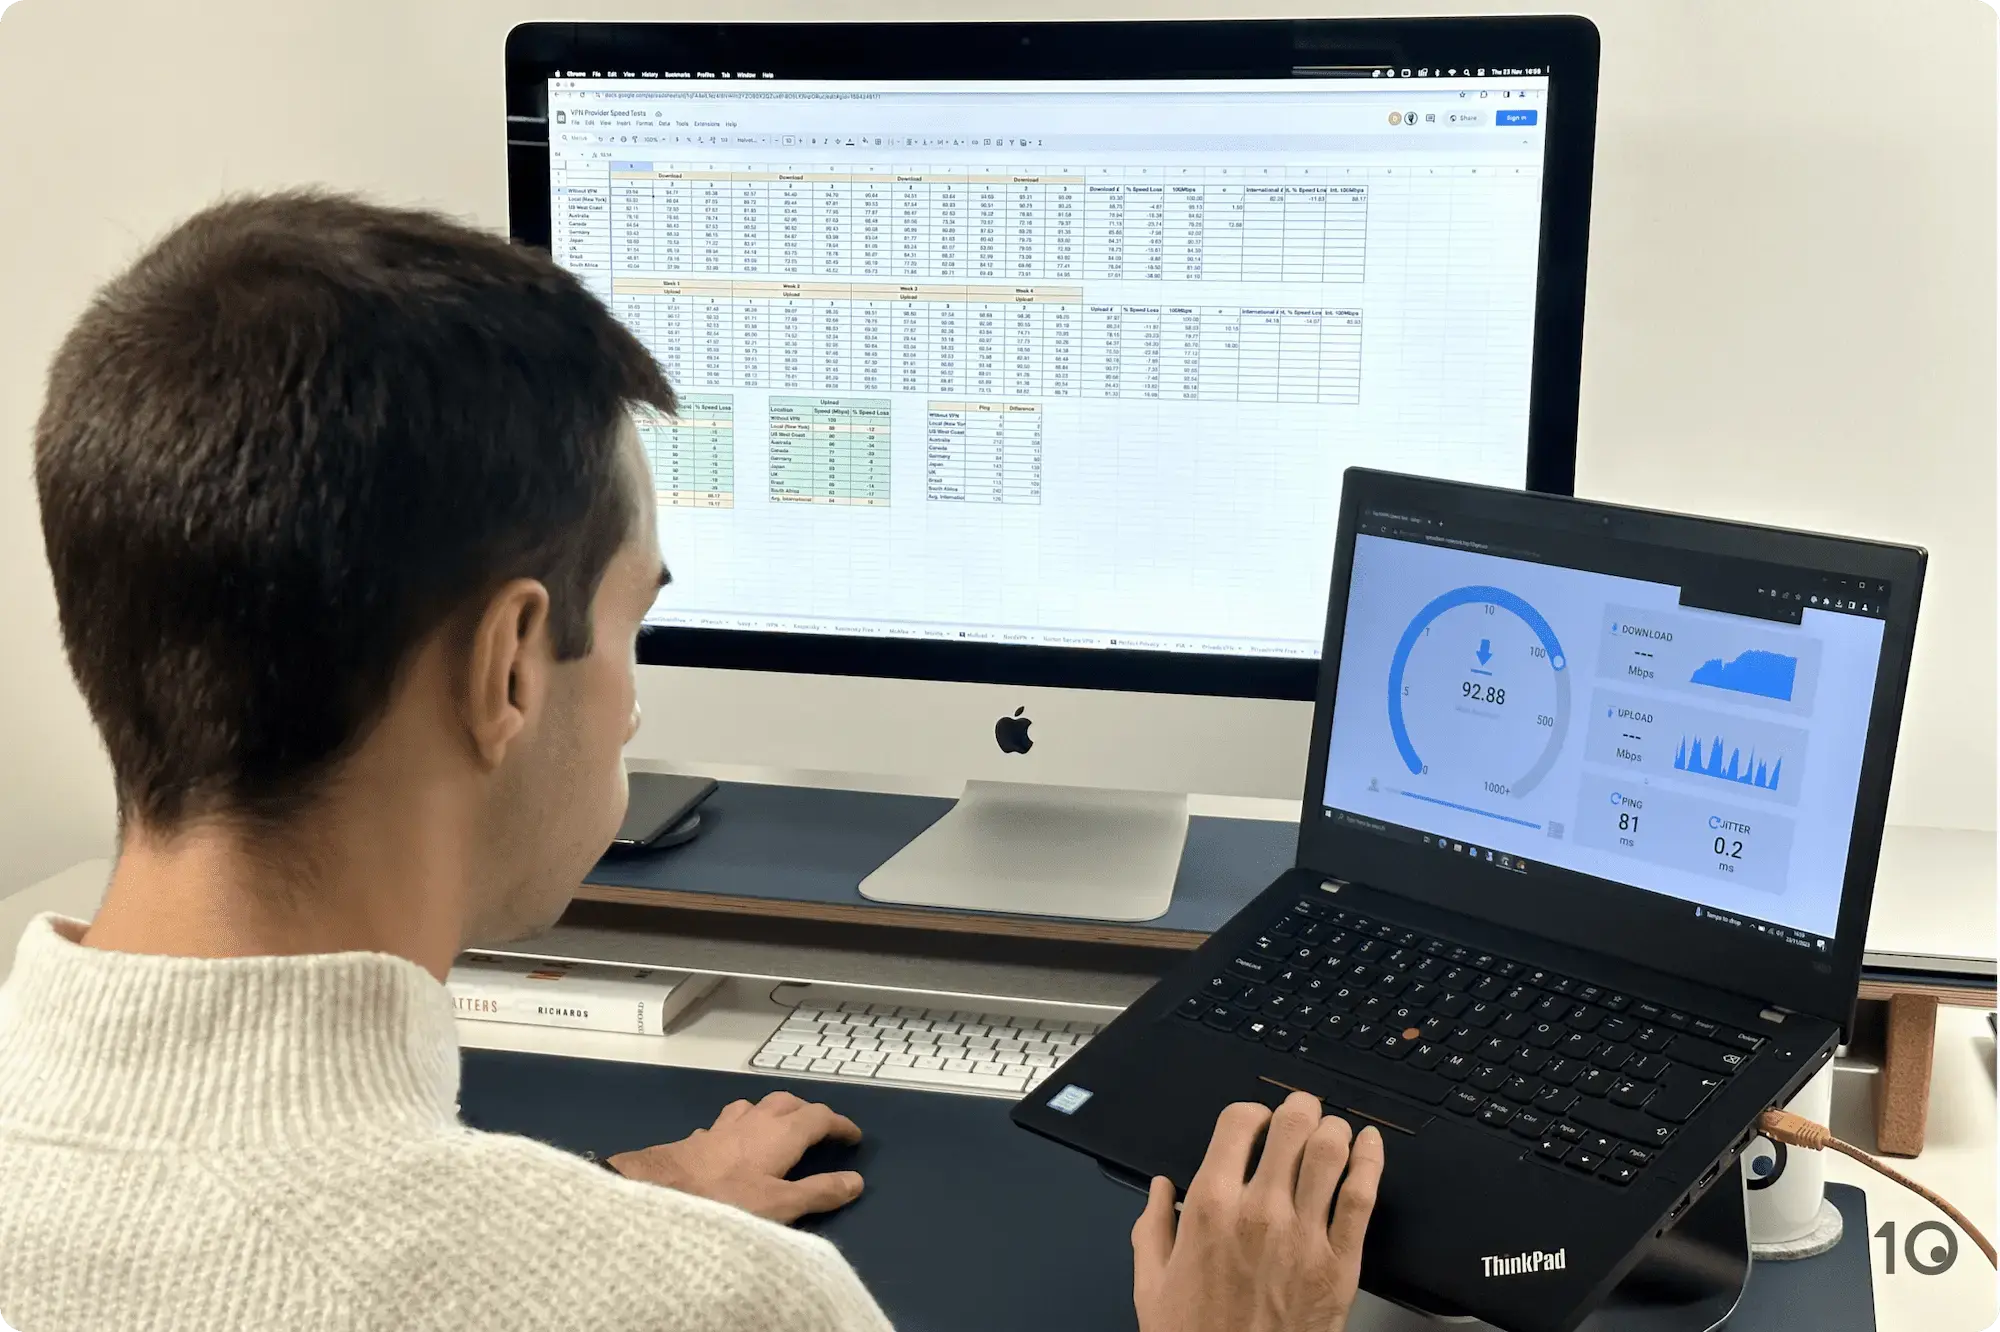 Un uomo alla scrivania testa le prestazioni di velocità di una VPN su un laptop e analizza un foglio di calcolo con i risultati del test di velocità su un iMac.